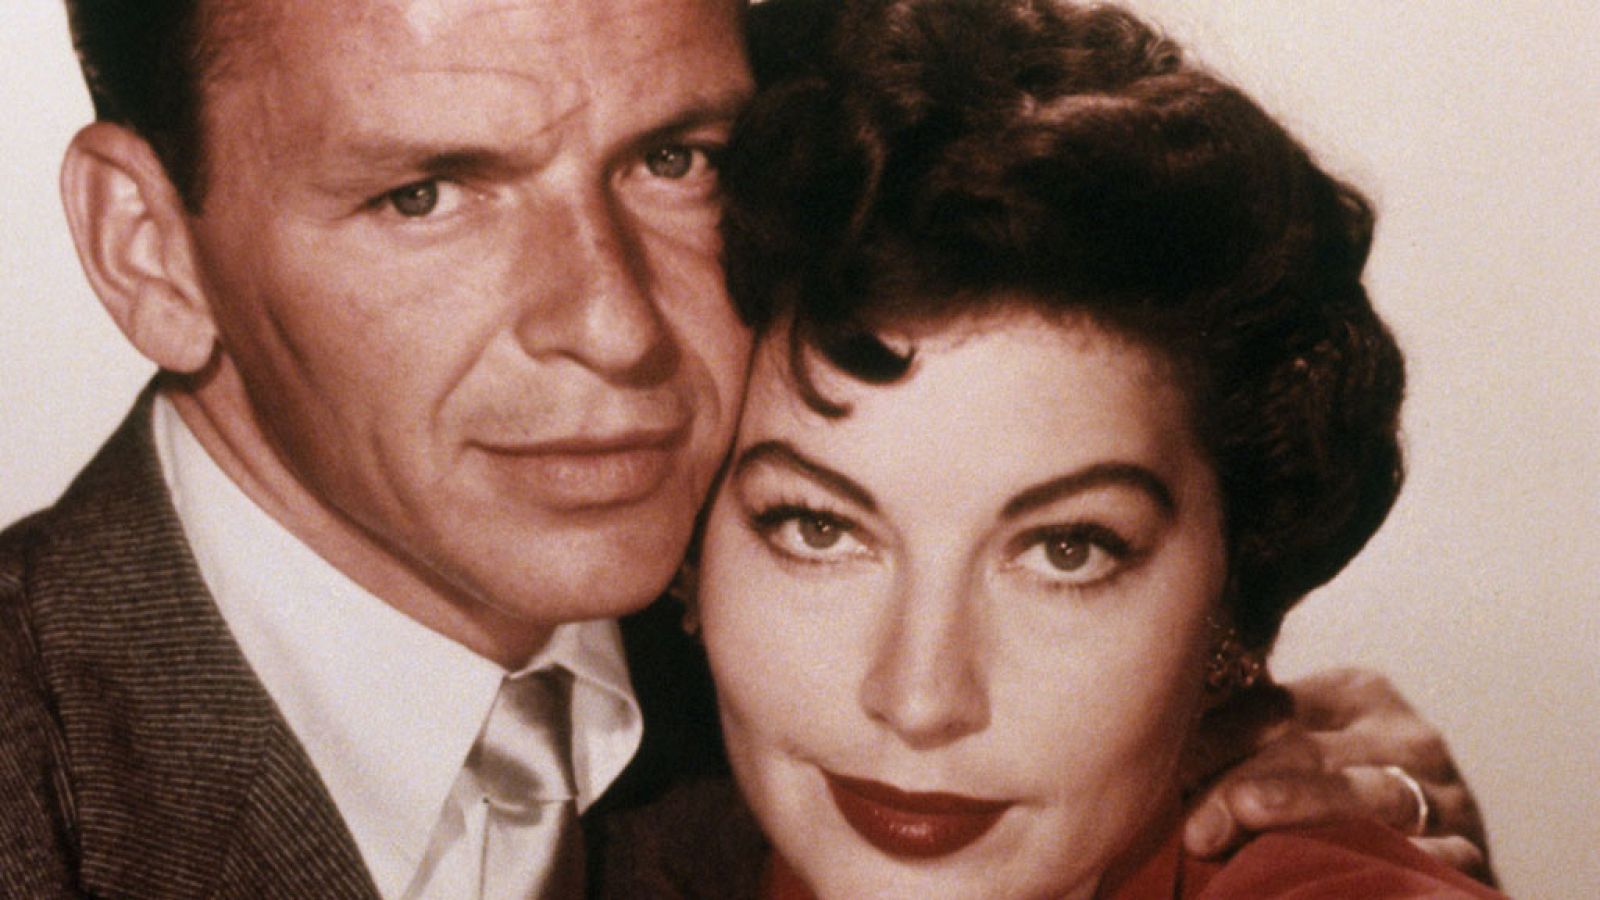 La noche temática - Sinatra y Ava, una pareja de escándalo - Avance